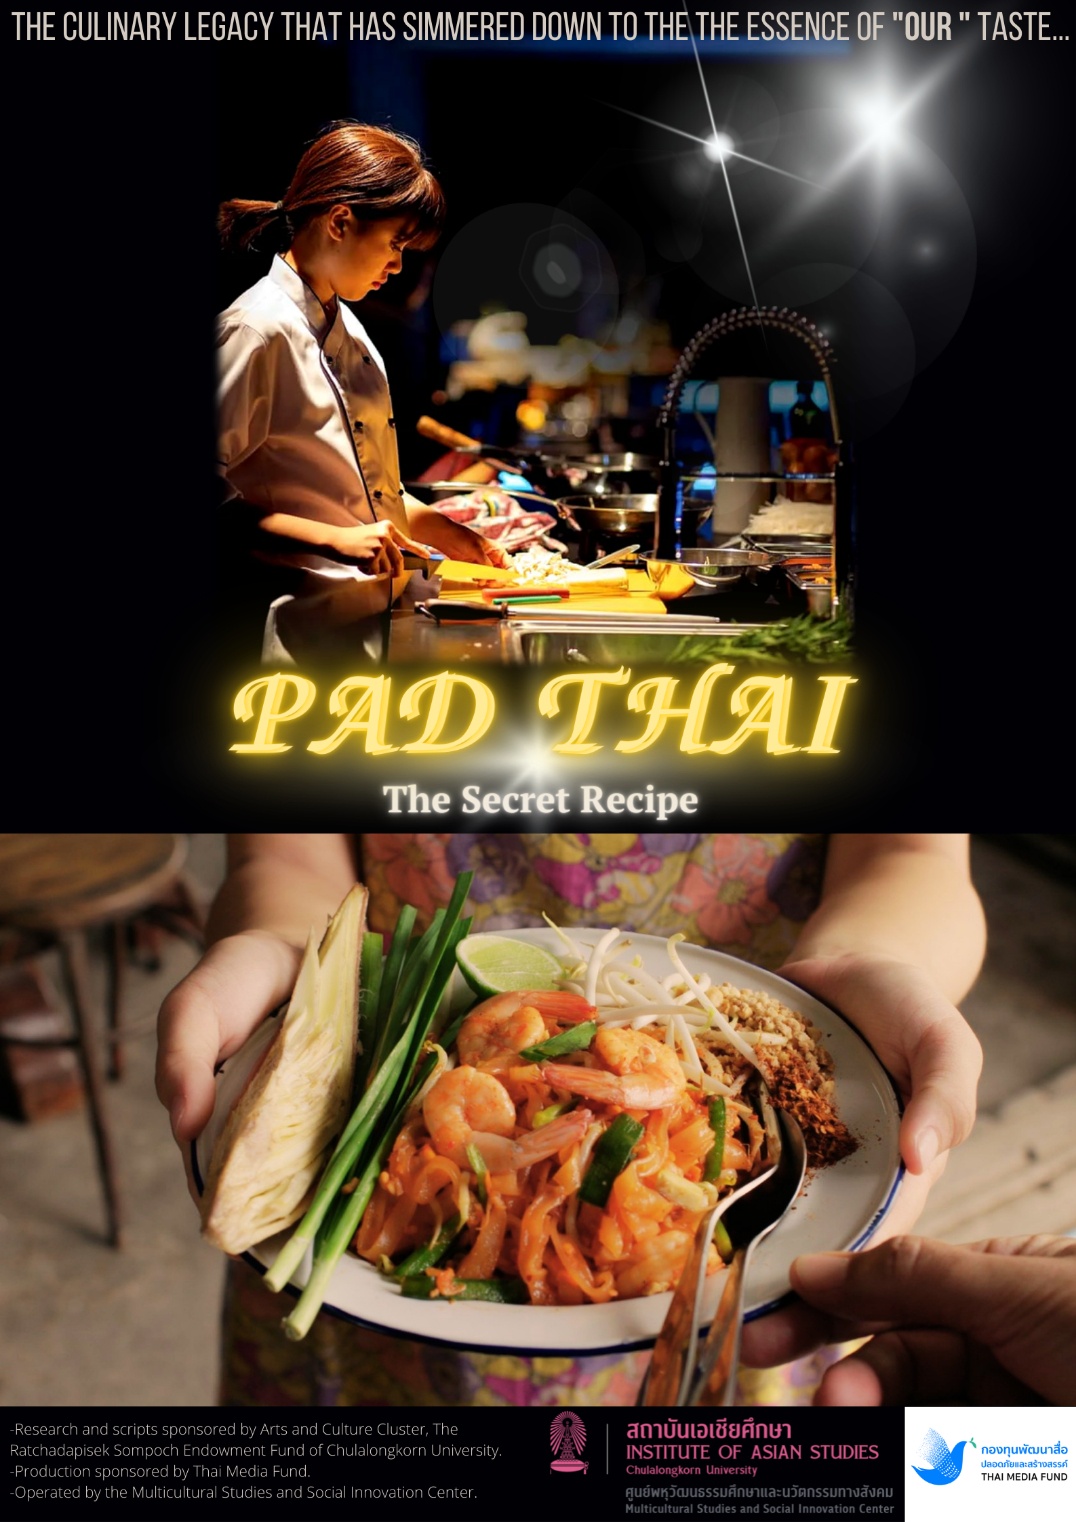 วธ. เดินหน้าขับเคลื่อน soft power ด้านวัฒนธรรมด้านอาหารของไทยสู่เวทีโลกผ่านสื่อบันเทิง เตรียมส่งภาพยนตร์ที่มีเนื้อหาเกี่ยวกับอาหารไทย